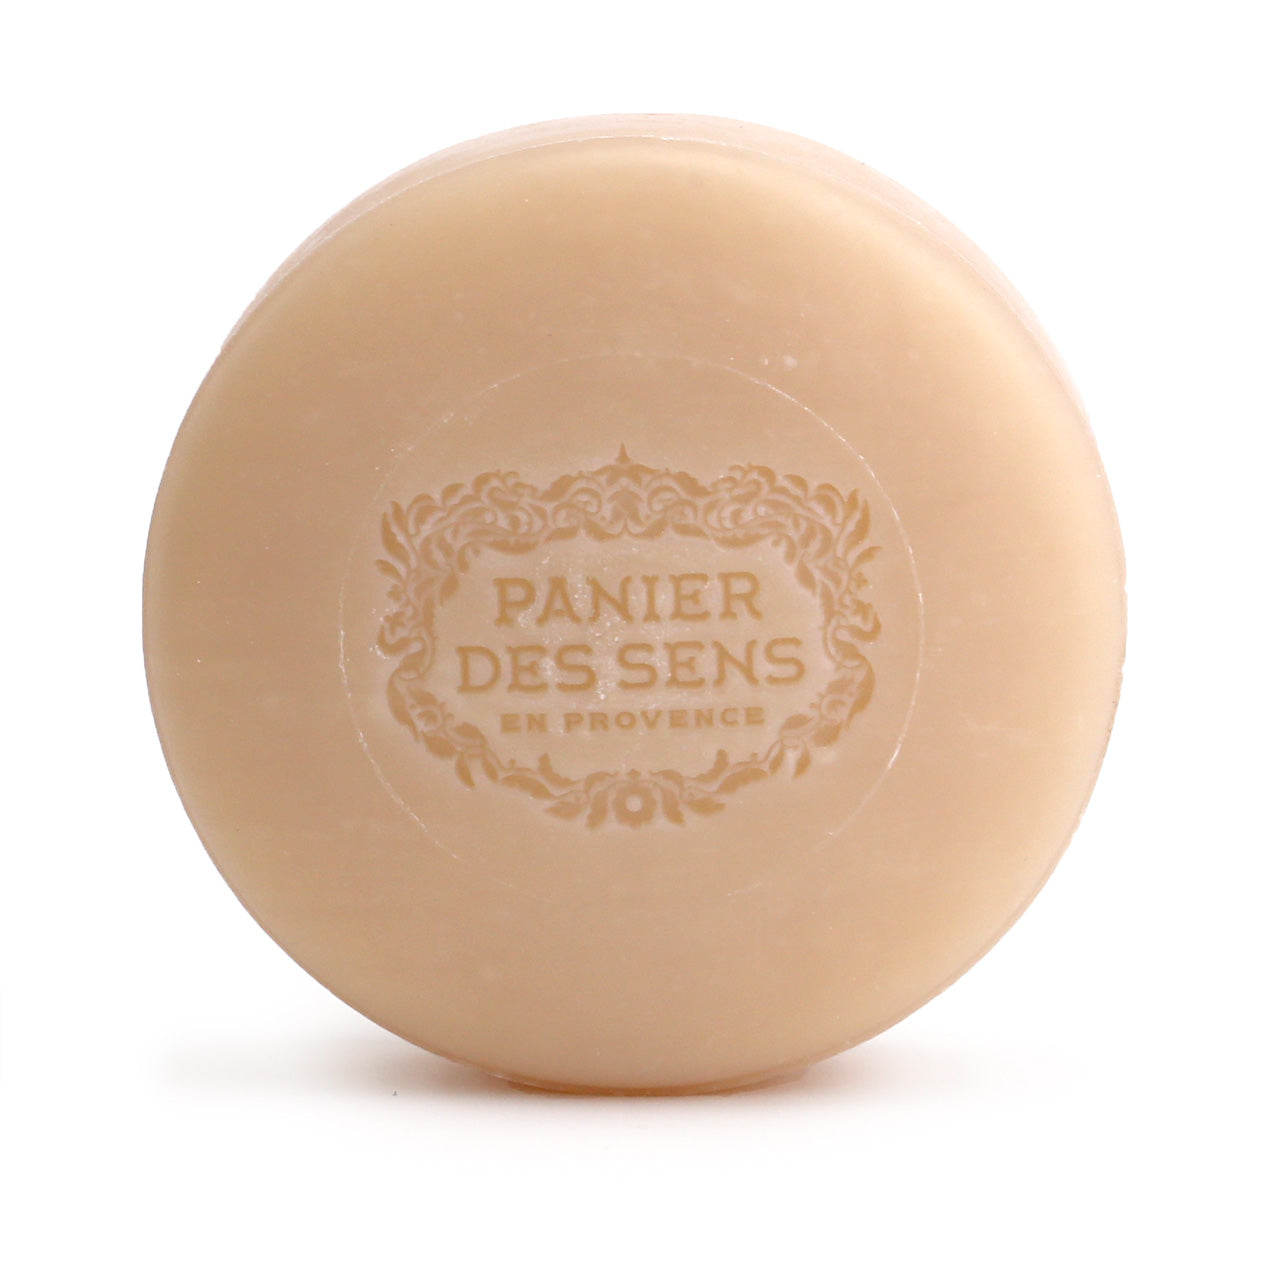 Panier des Sens shaving soap puck showing the top logo impression 